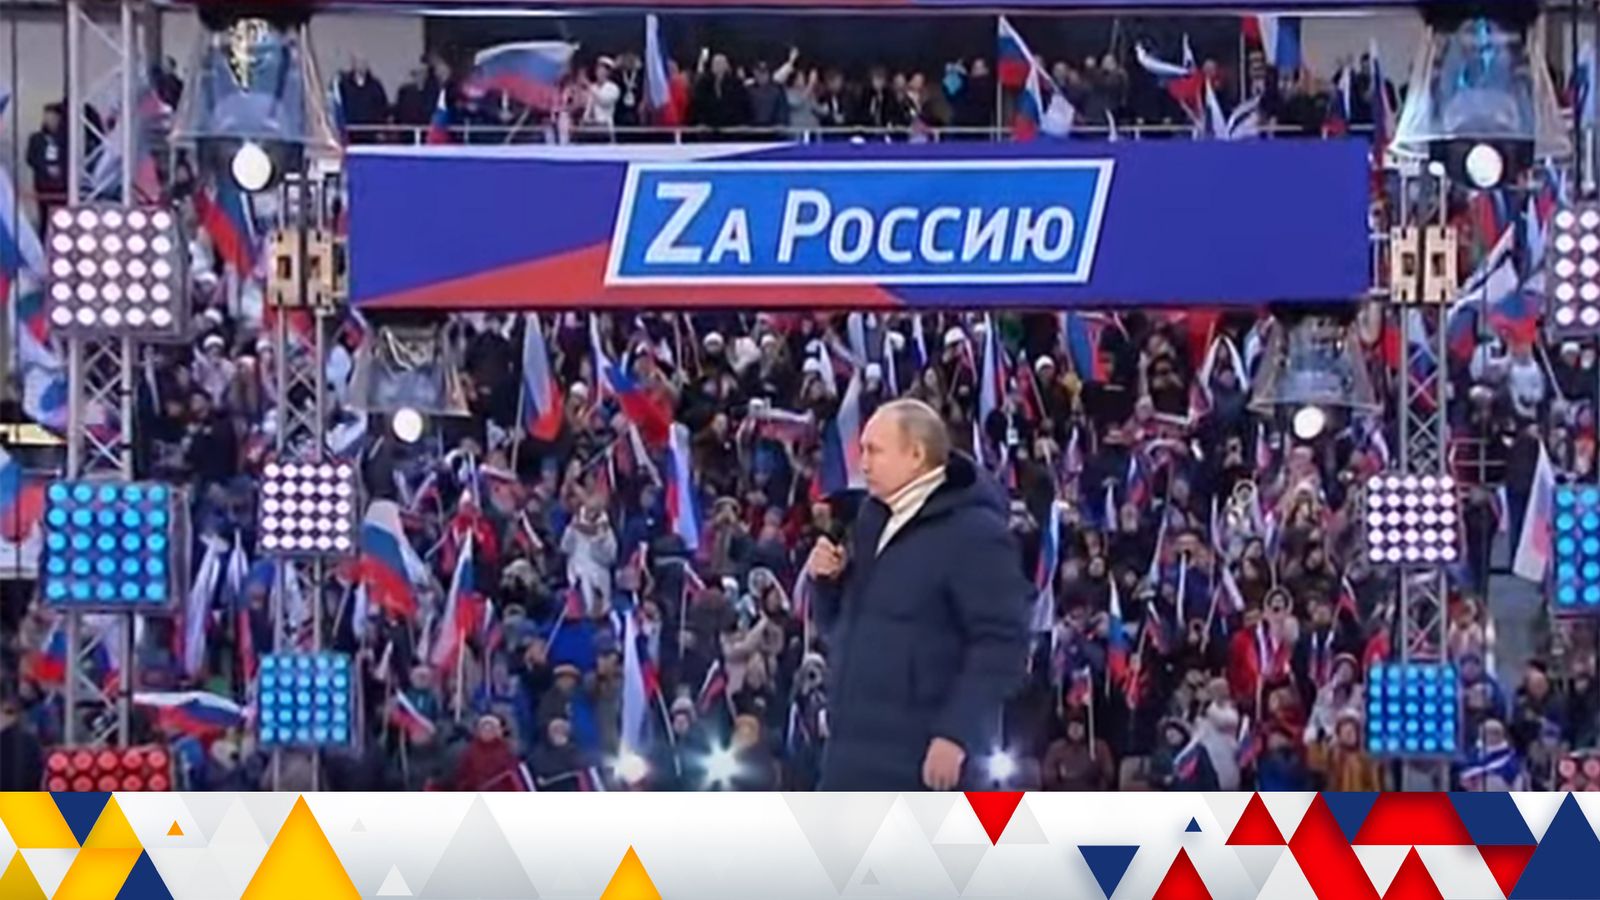 Poutine salue “l’opération spéciale” en Ukraine lors d’une grande fête pour la “réunification” de la Crimée |  Nouvelles du monde